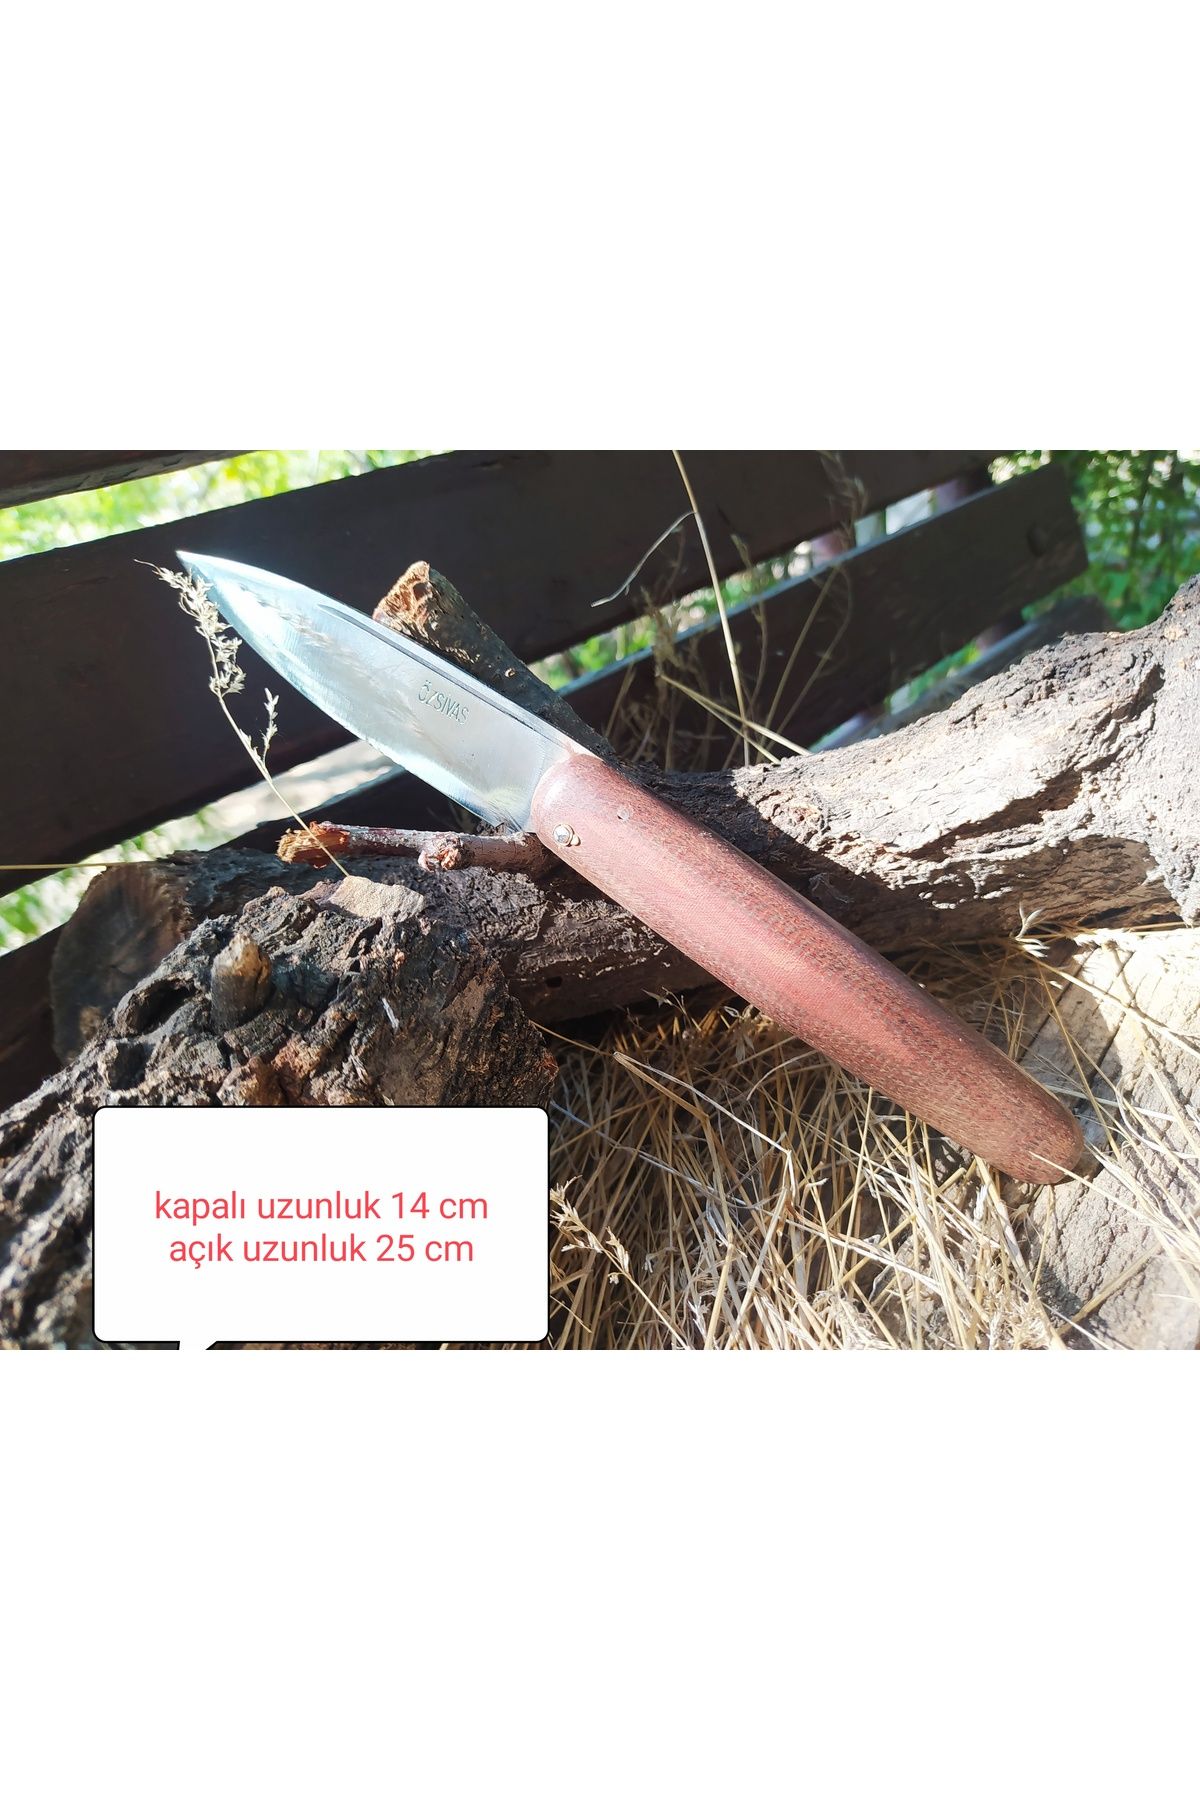 DİBA AVM Sivas Çakısı Fiber saplı Piknik Bıçağı Sivas Bıçağı Çakı Av Çakı Kamp Bıçak Outdoor battal boy 14 cm